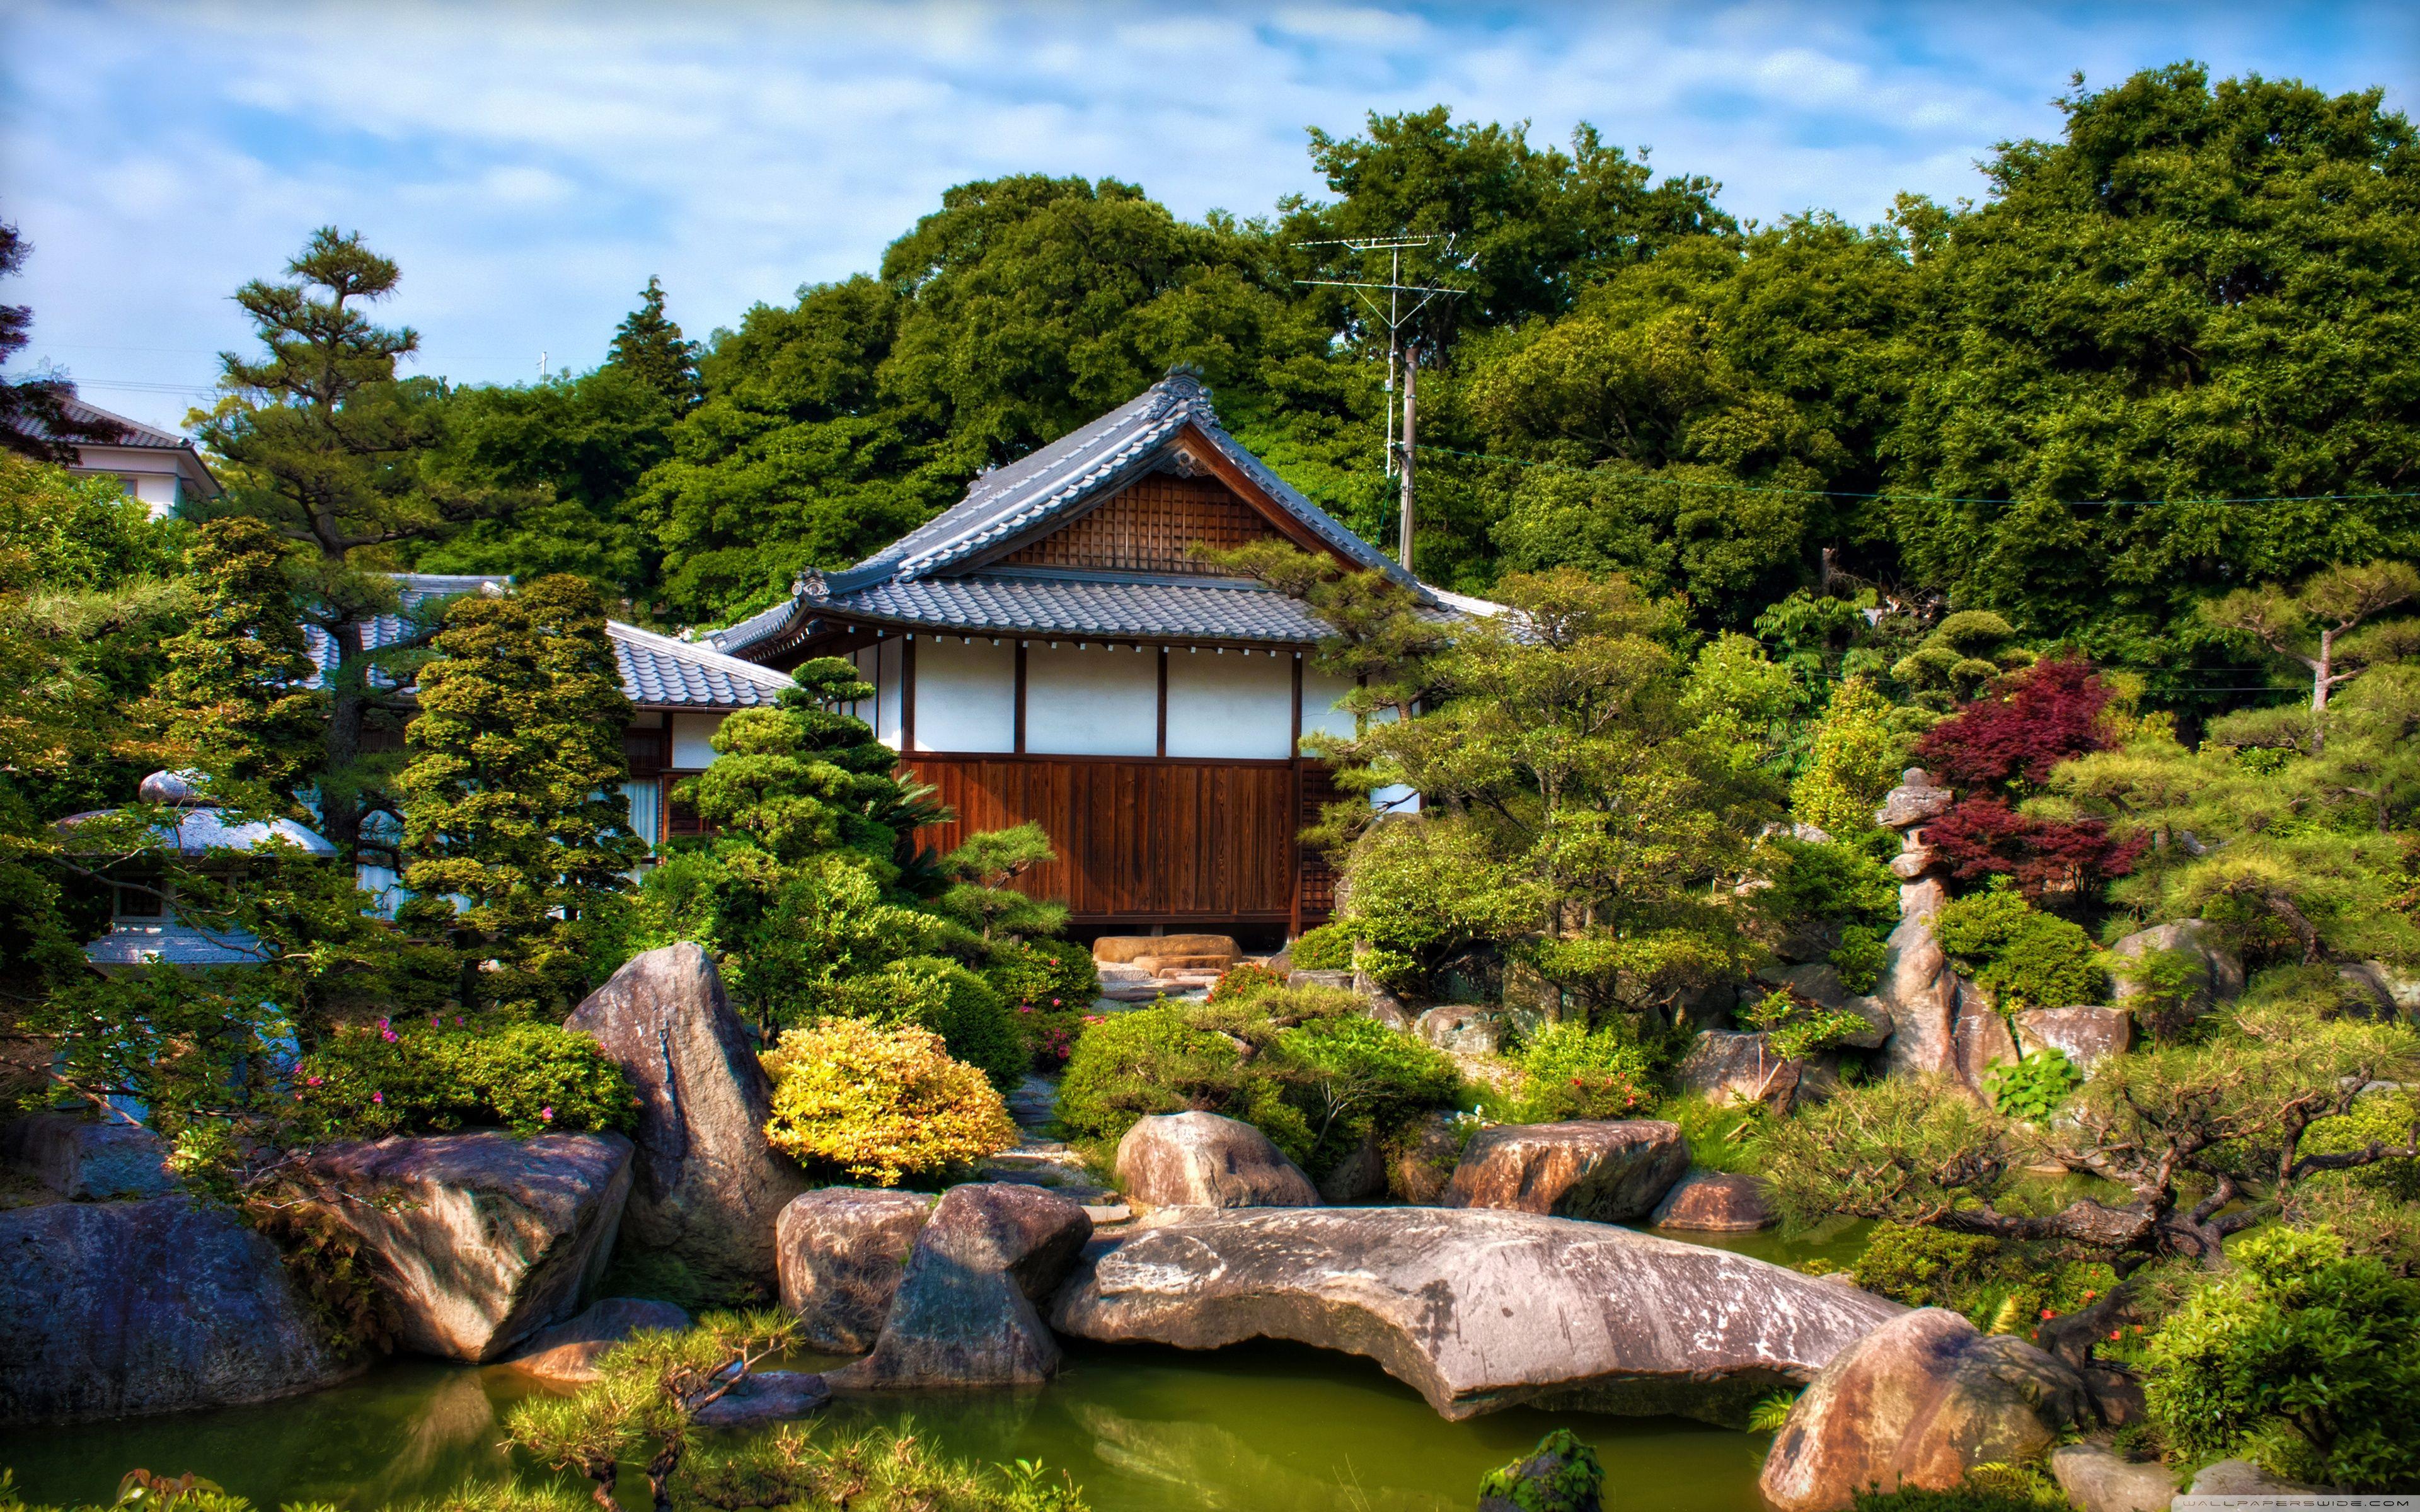 Забронировать столик в японском саду. Японский сад Цукияма. Сад Цукияма в Японии. Ландшафтный пейзажный сад Японии.